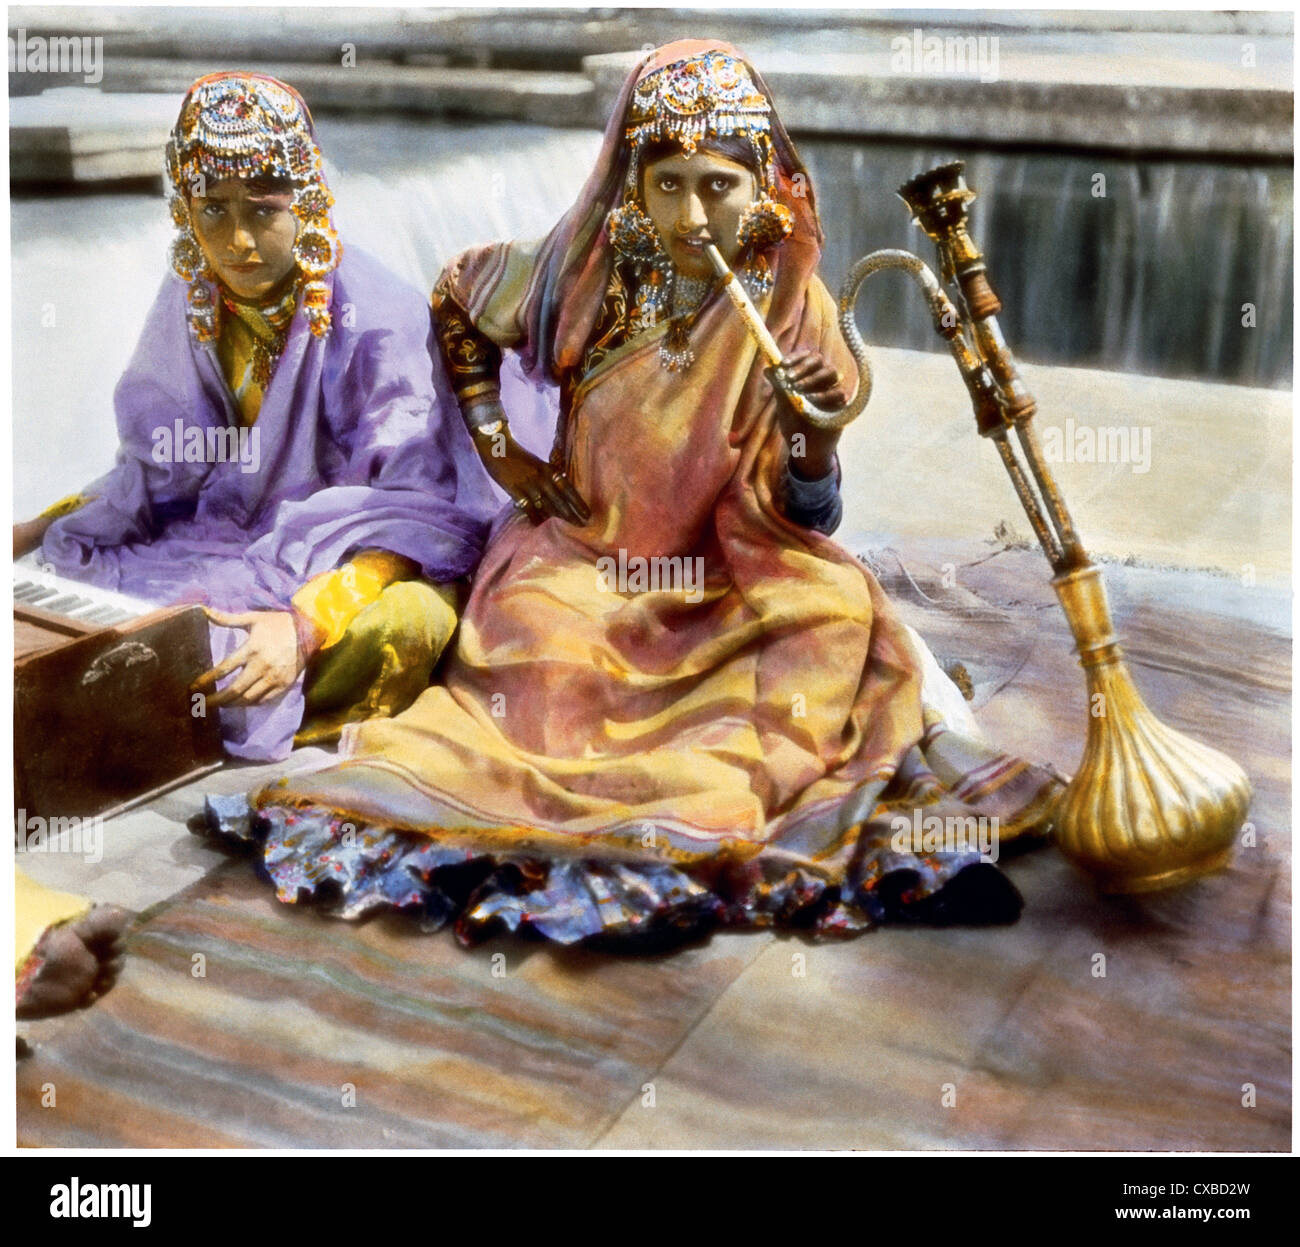 Portrait colorisé de deux femmes, vêtues d'une tenue opulente, assis sur des tapis pendant un festival, Delhi, Inde, 1912. L'une des femmes fume un tuyau d'eau, tandis que l'autre joue un harmonium. (Photo de Burton Holmes) Banque D'Images